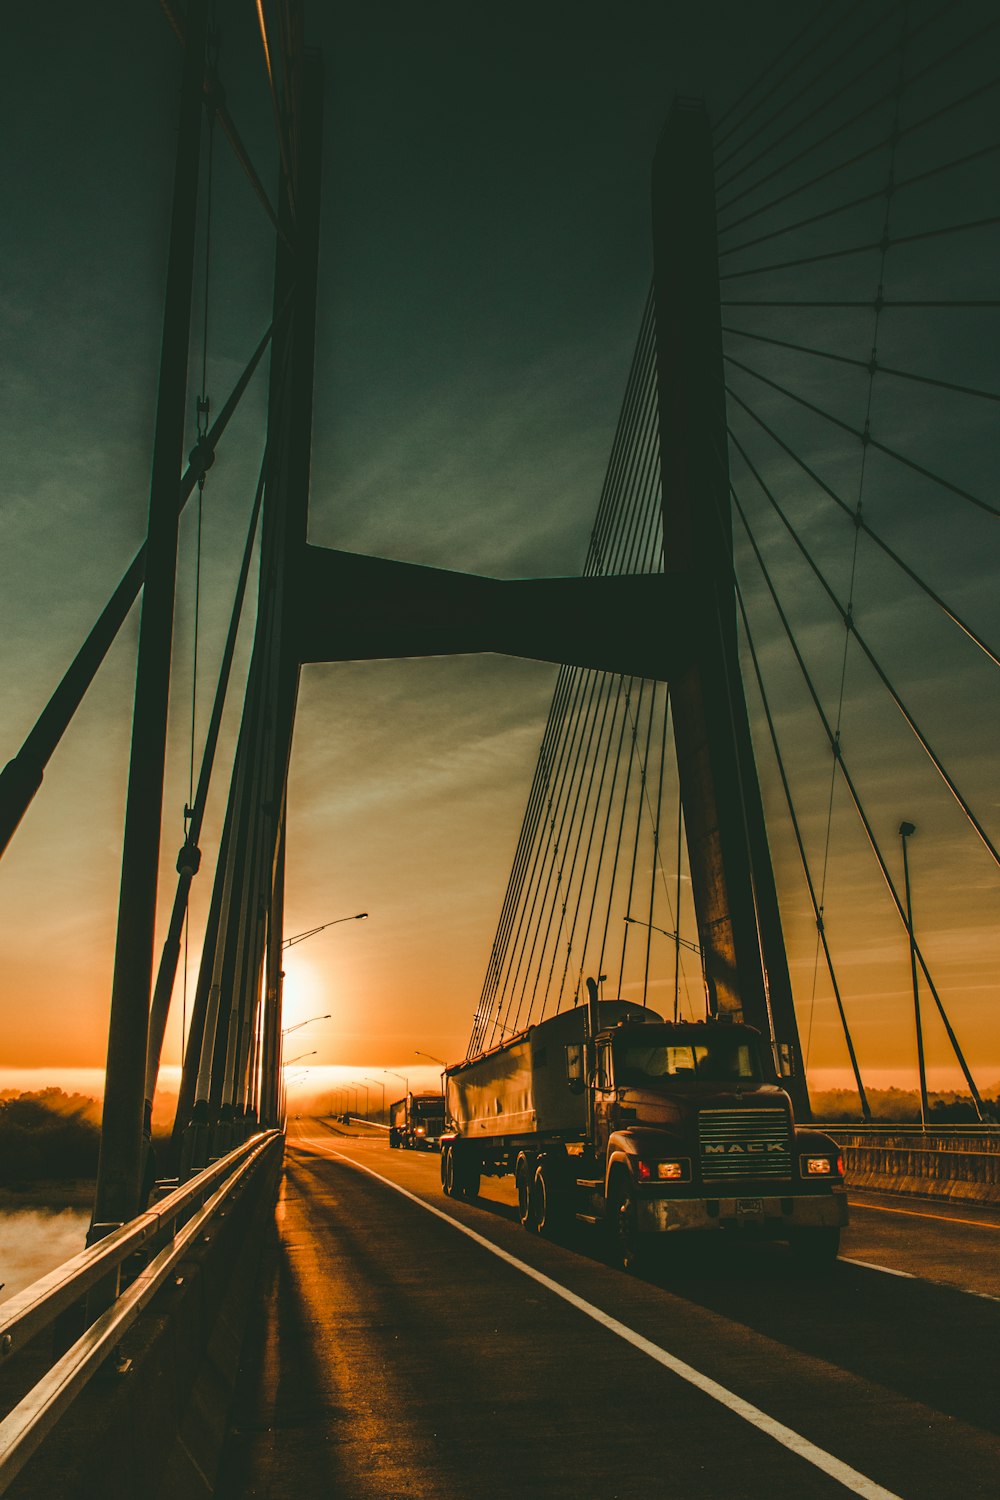 夜明けの橋の上の茶色のメーク貨物トラック